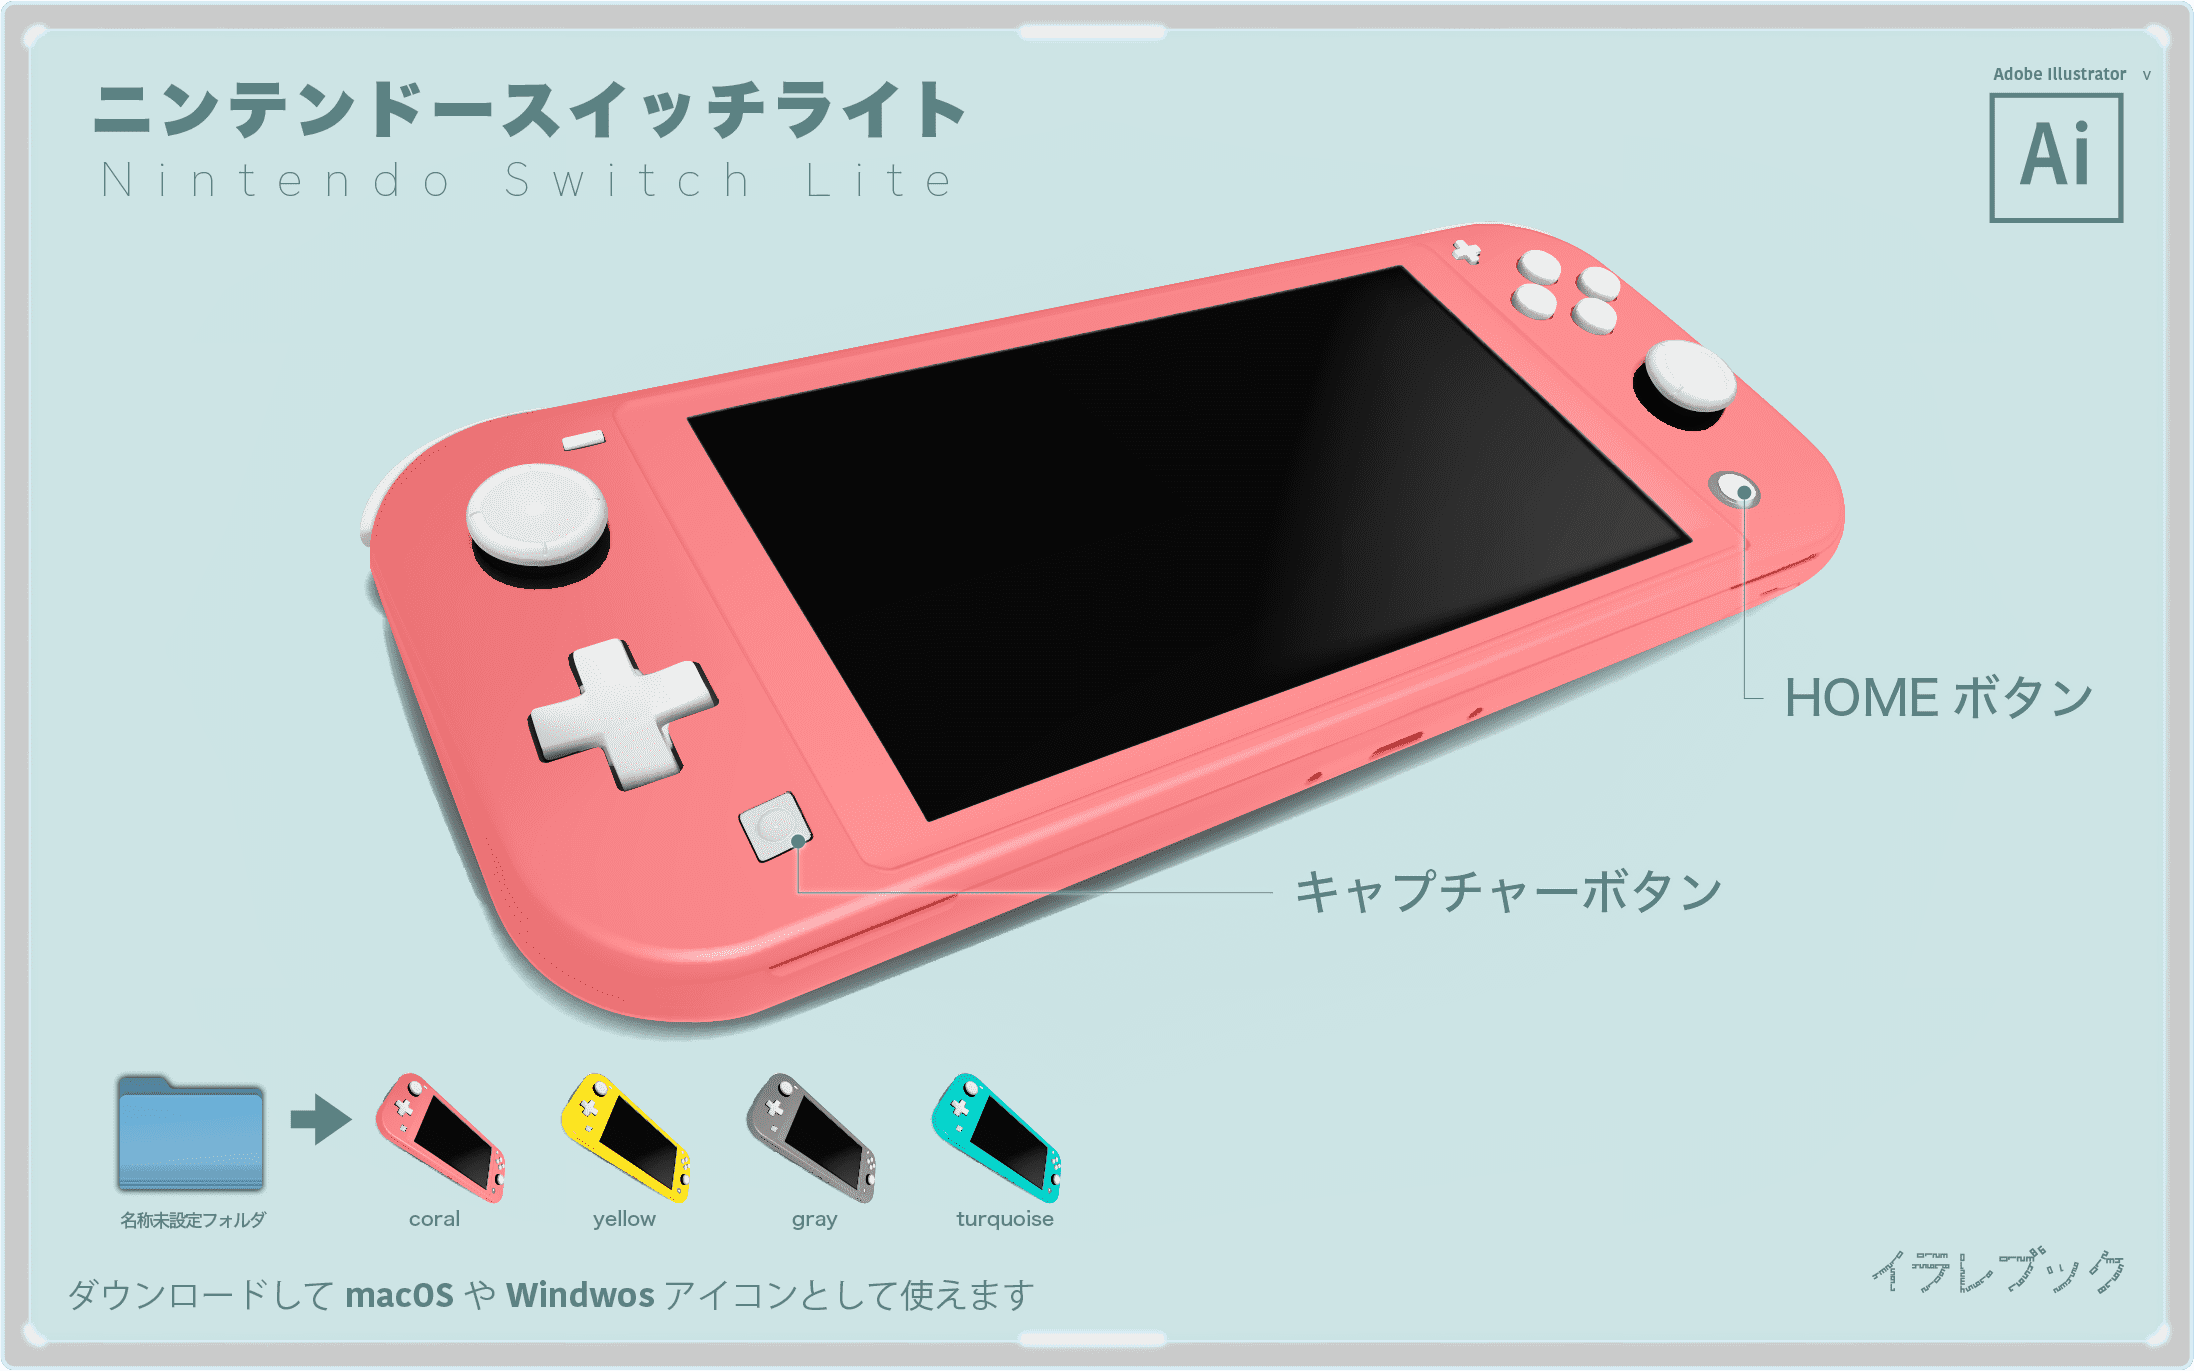 Nintendo Switch lite ニンテンドースイッチライト イラスト